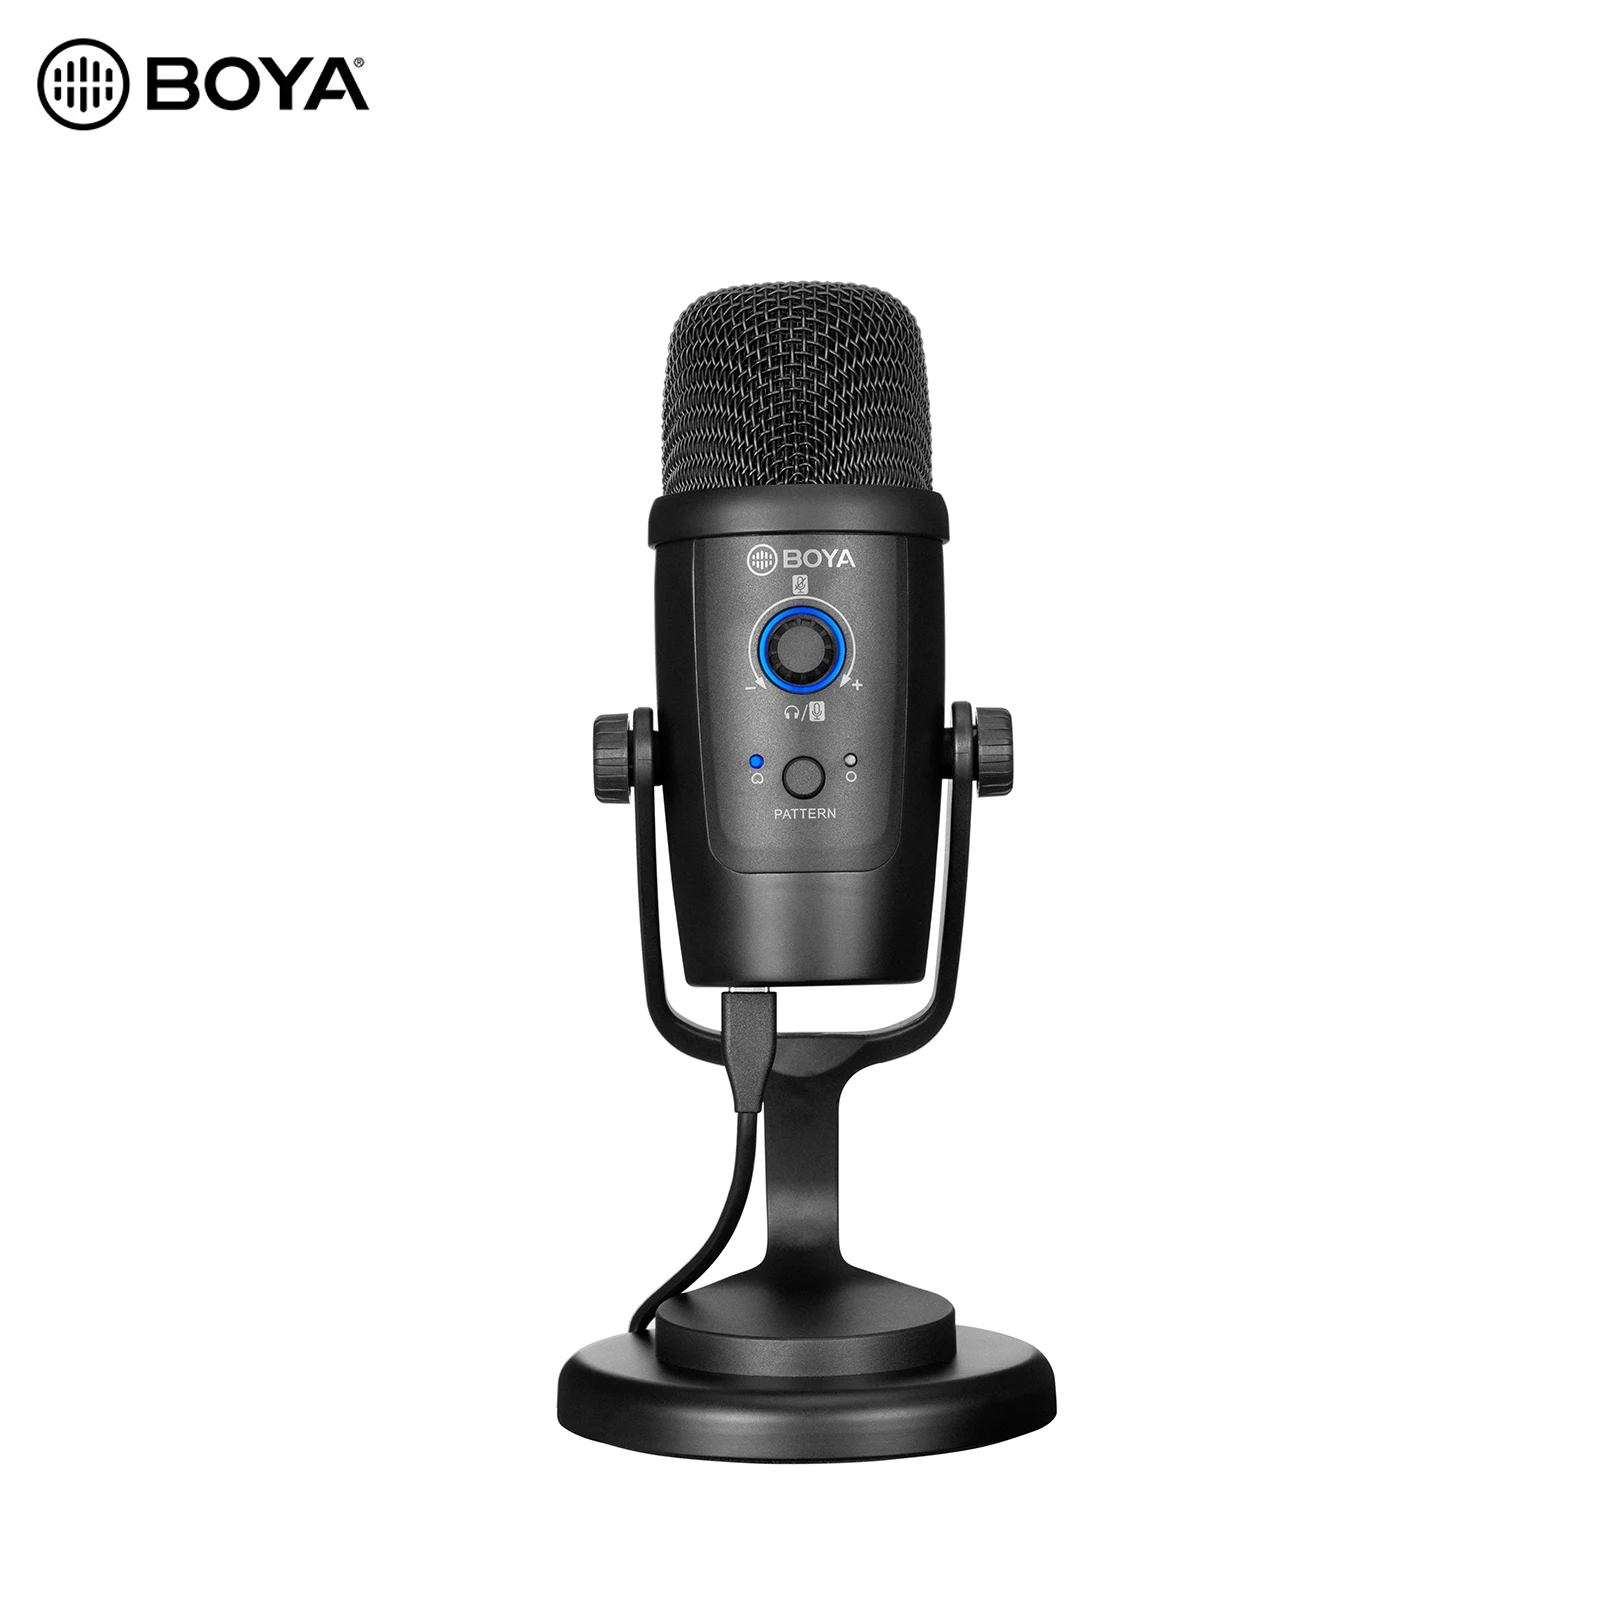 

BOYA Studio USB мини-микрофон, микрофон, всенаправленные узоры, функция отключения звука, разъем 3,5 мм с подставкой для микрофона, кабель USB Type-C